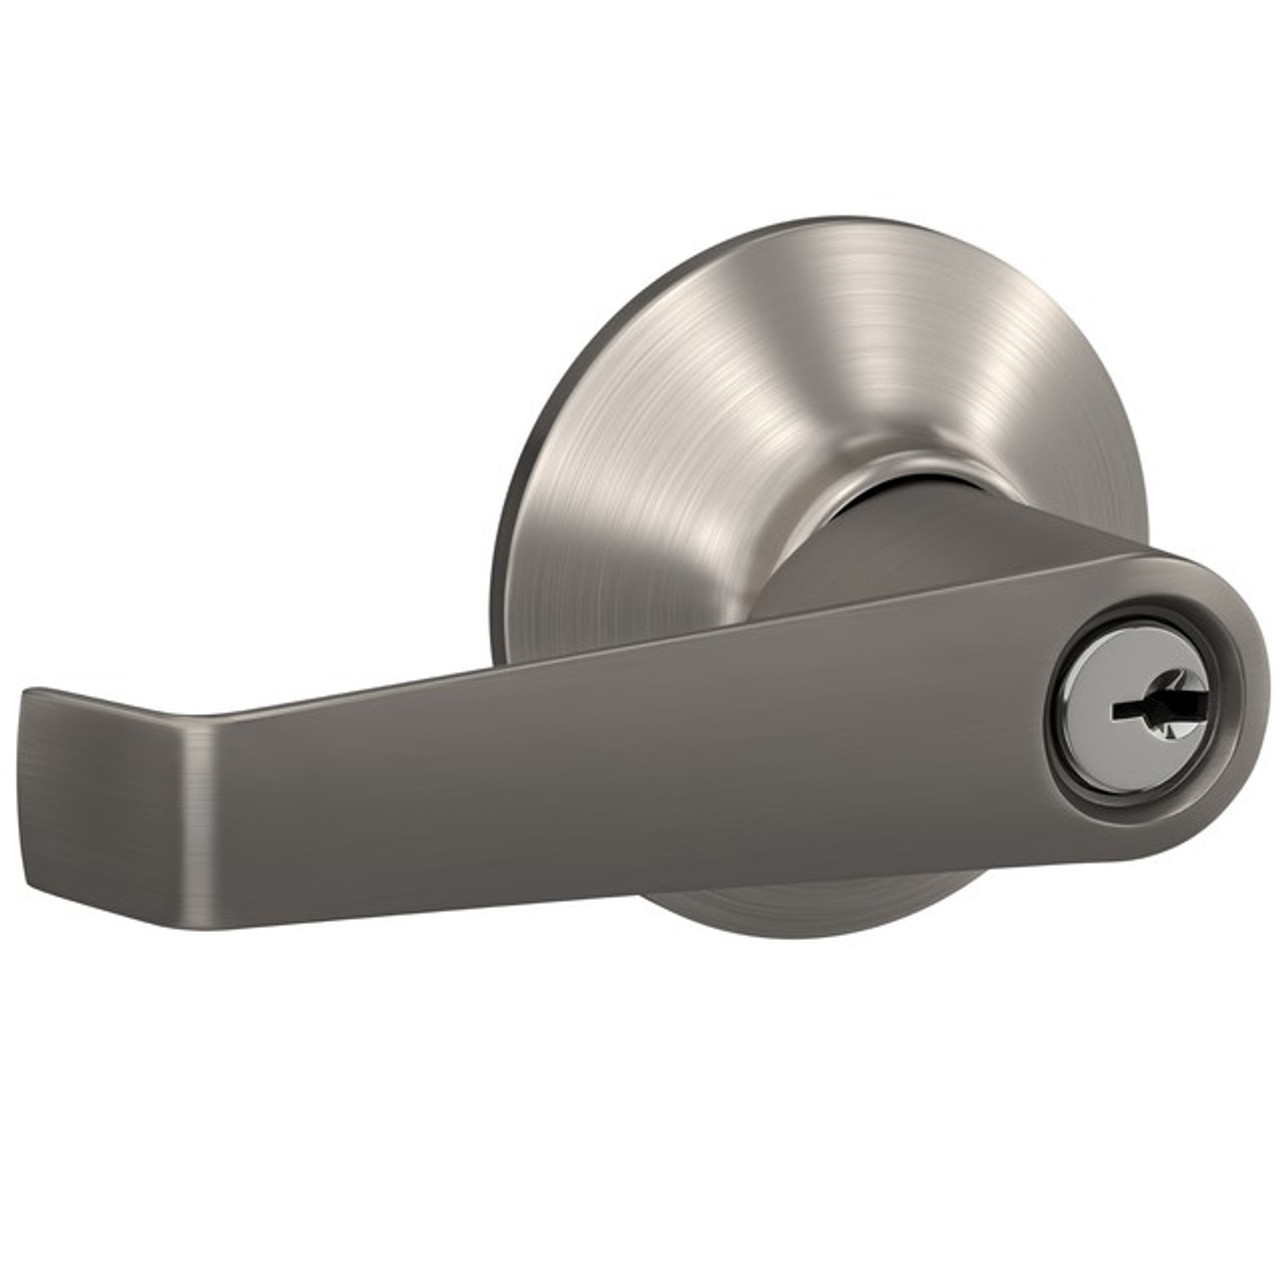 Schlage Keyed Entry Elan Lever Door Lock with Standard Trim